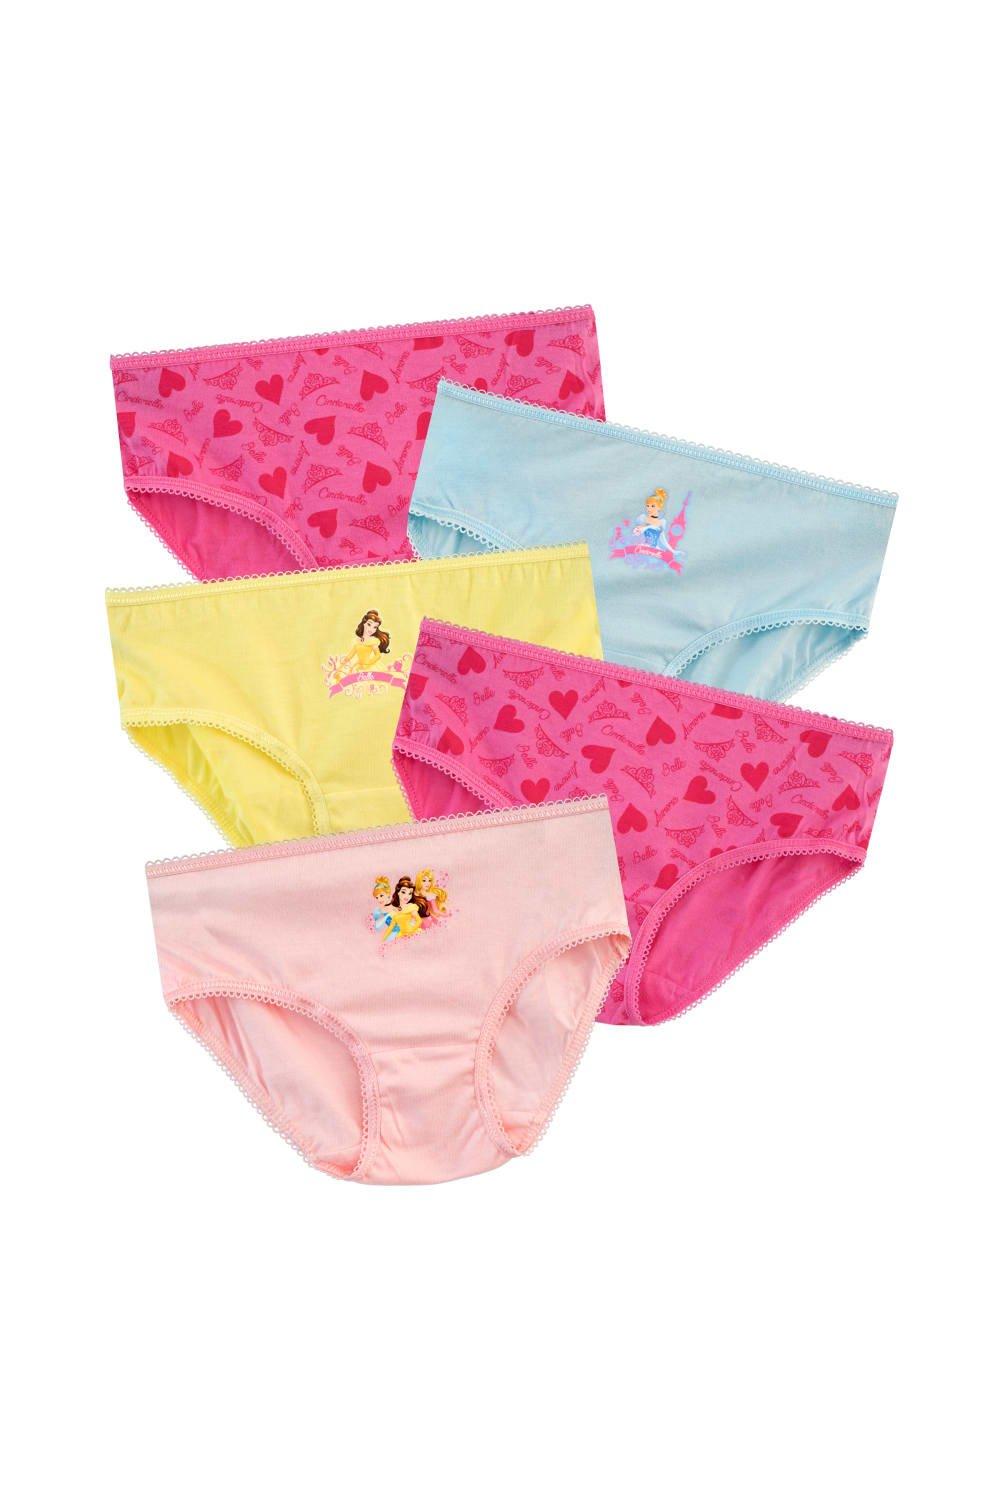 Princess Briefs Underwear 5 Pack